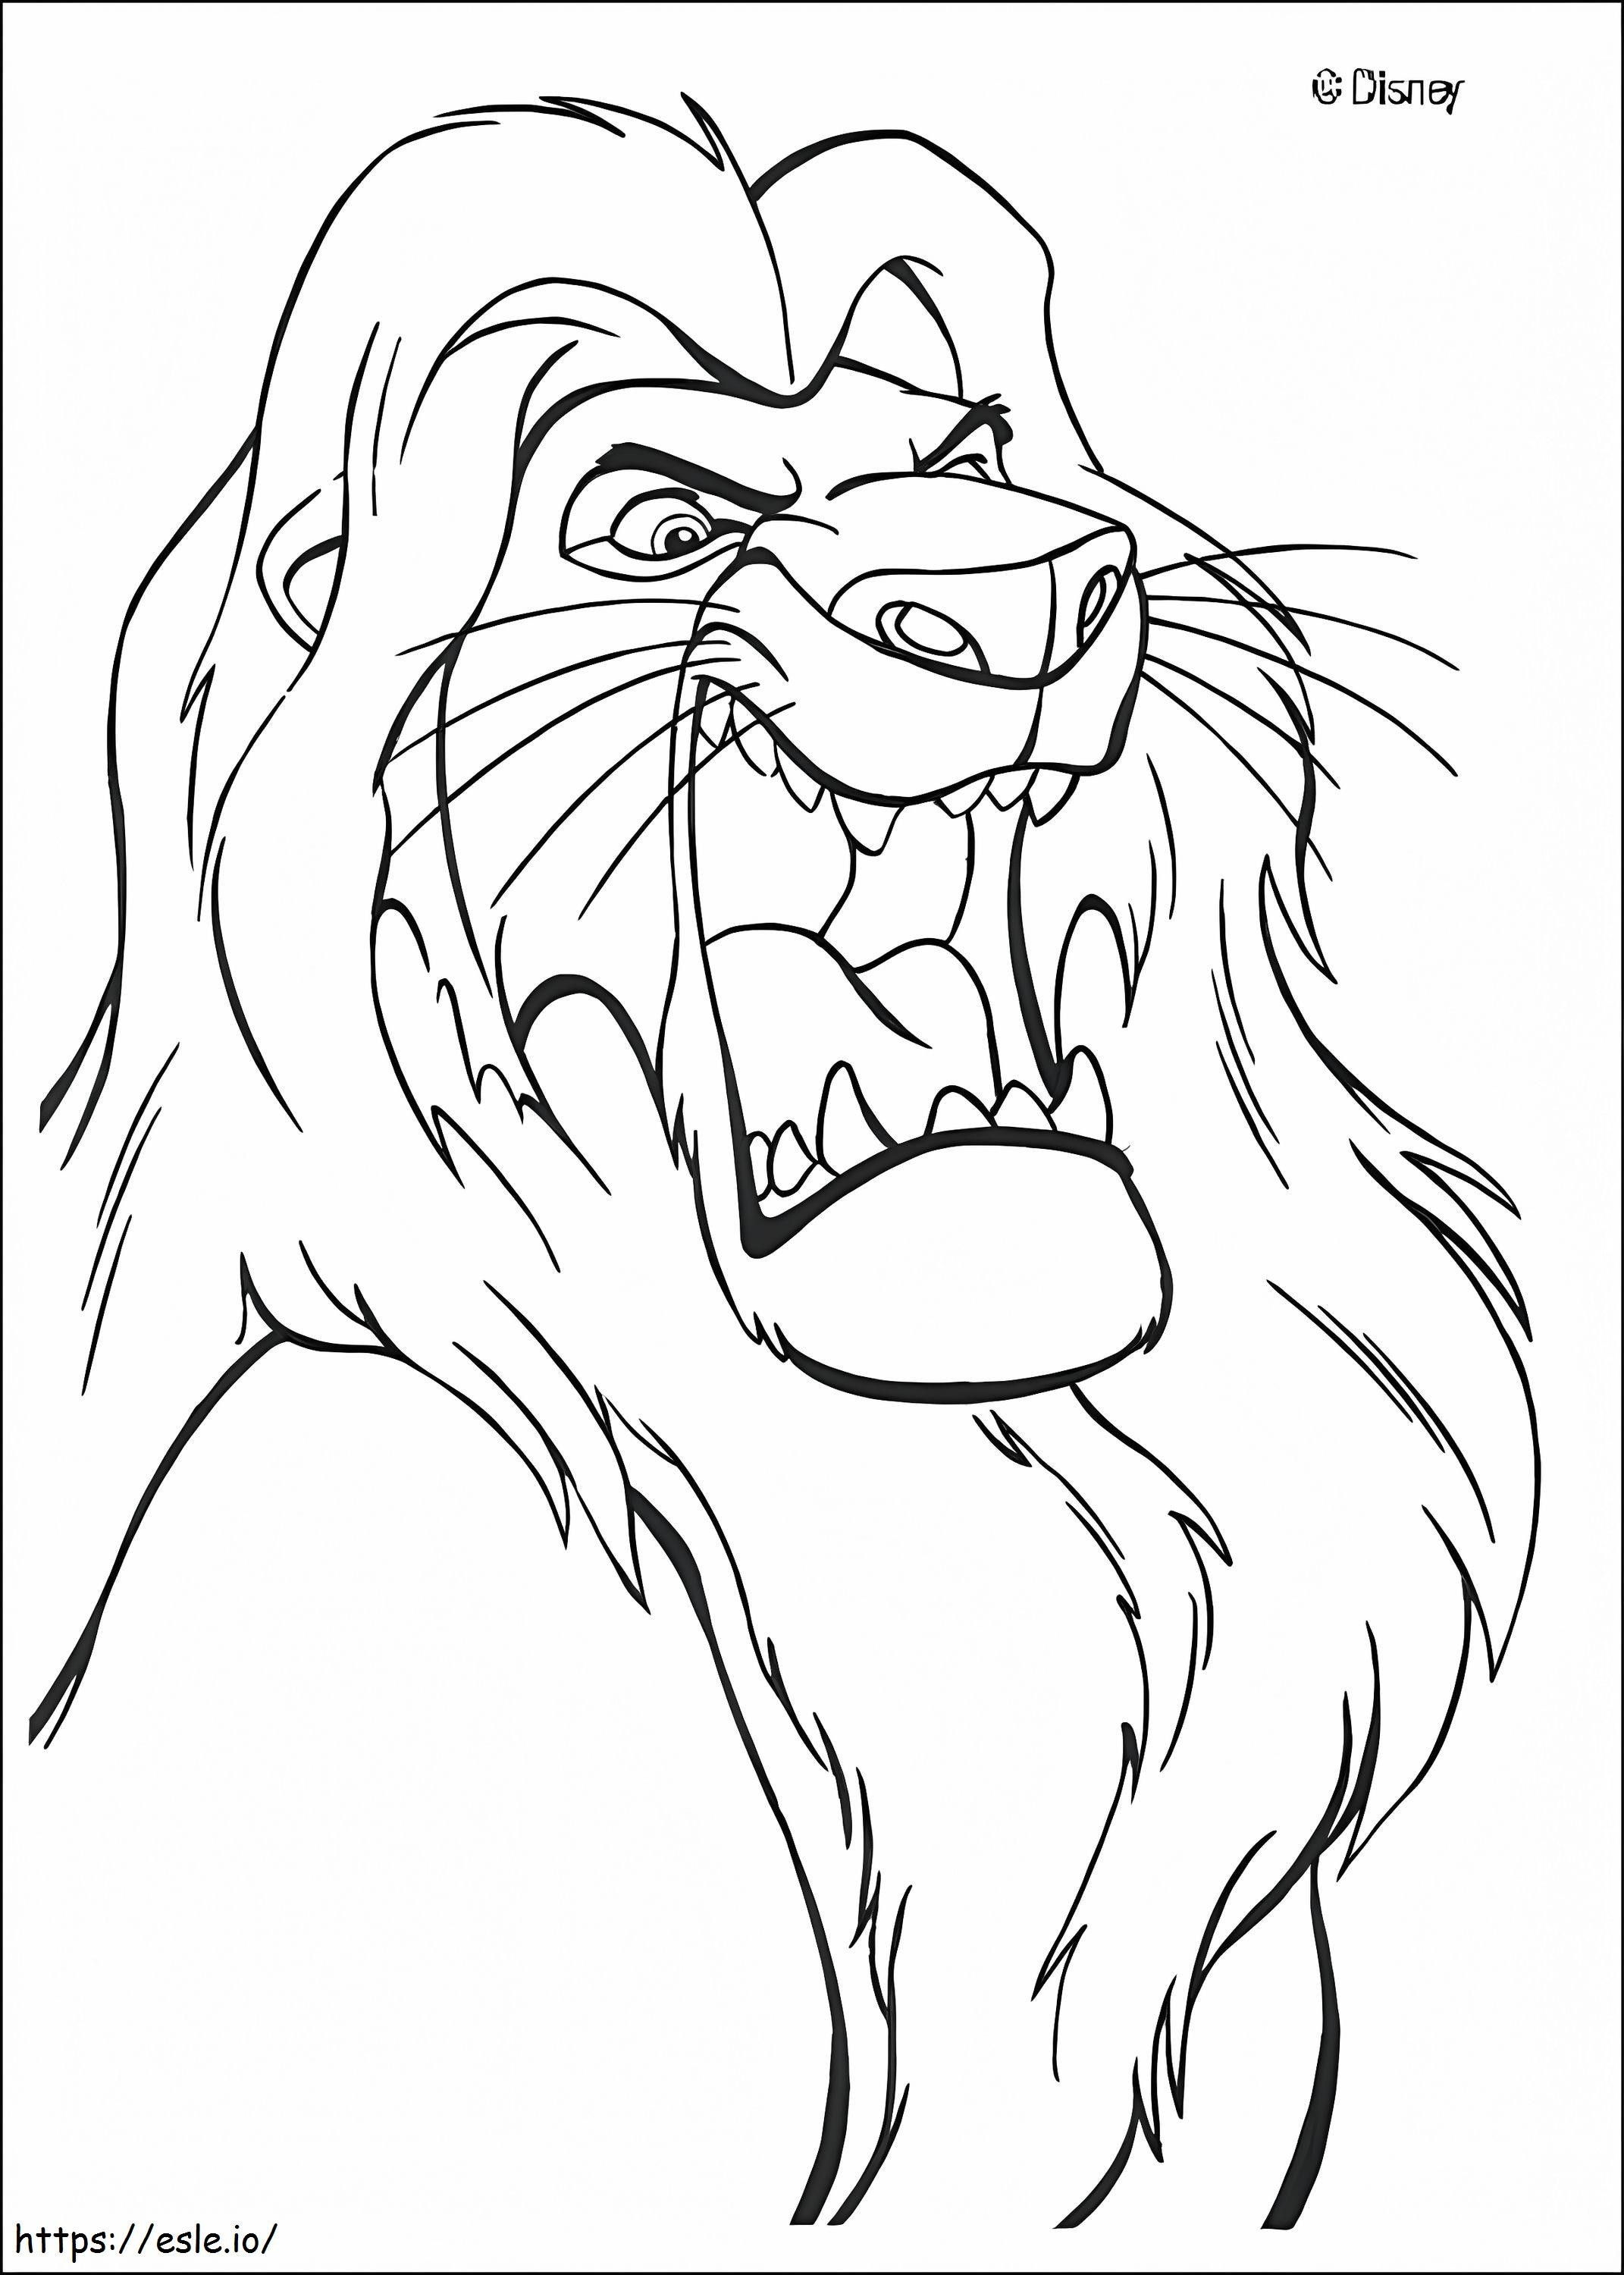 Angry Simba coloring page